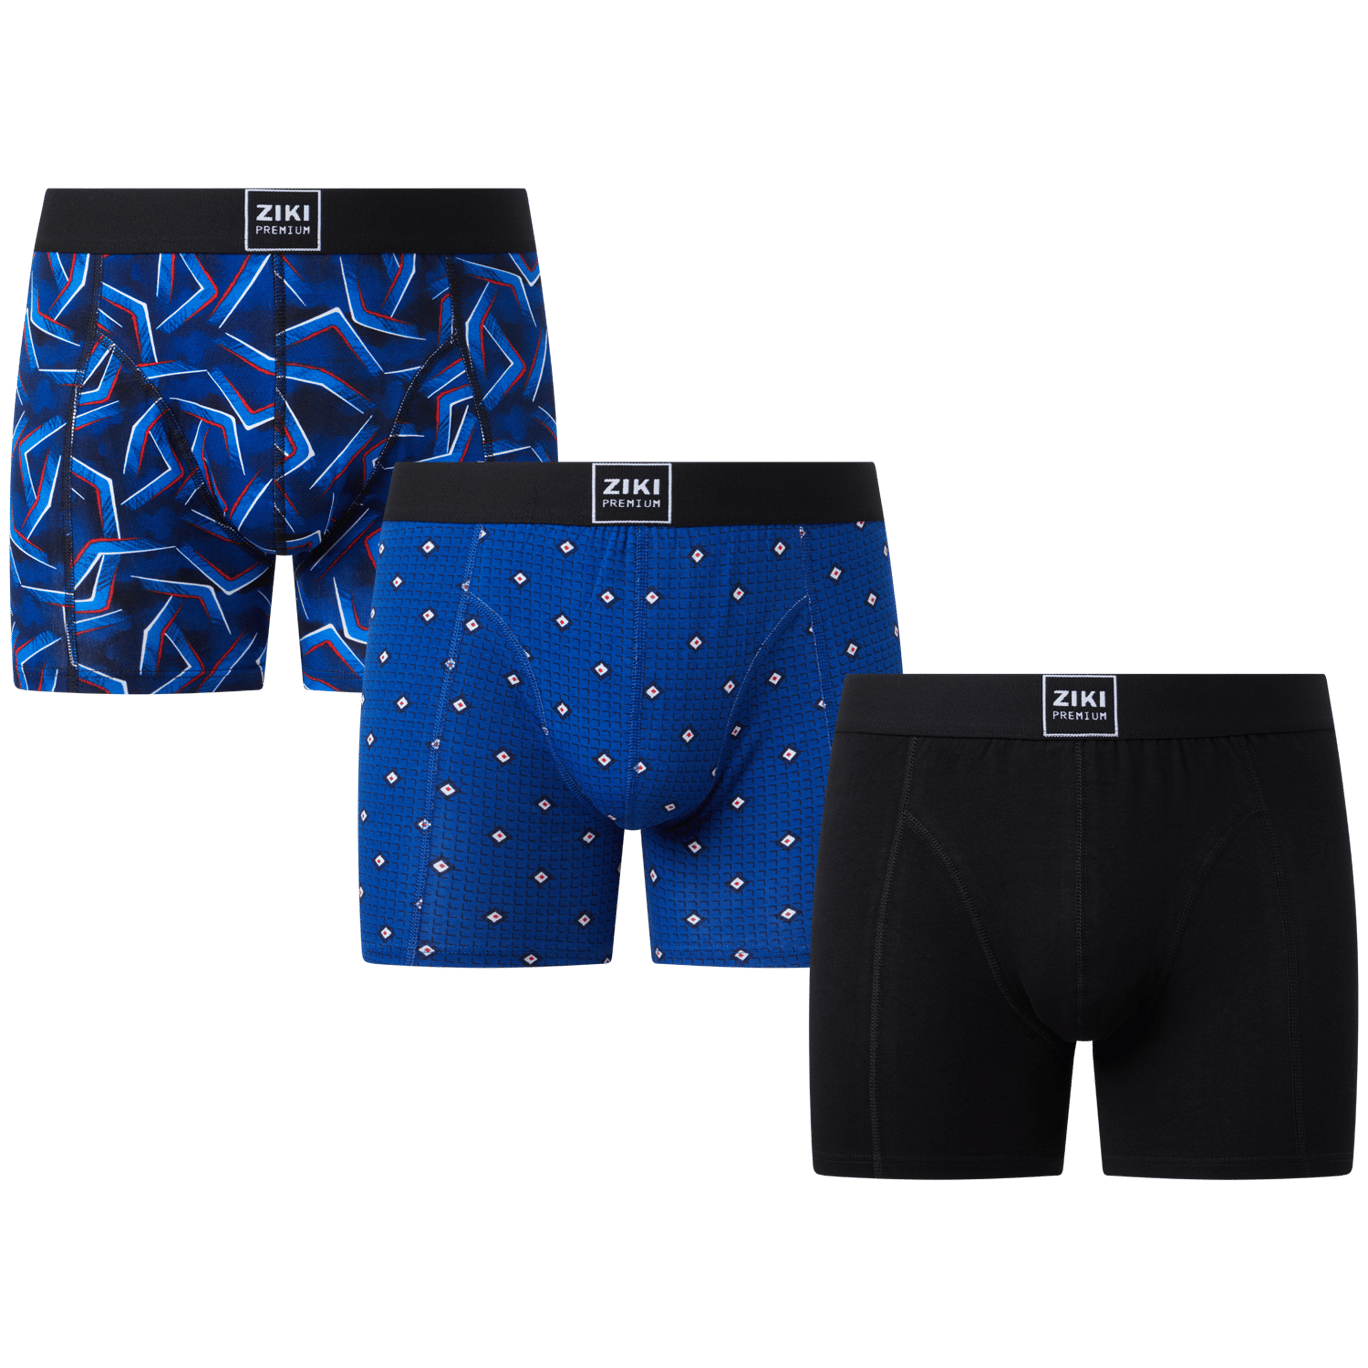 Ziki Premium-Boxershorts